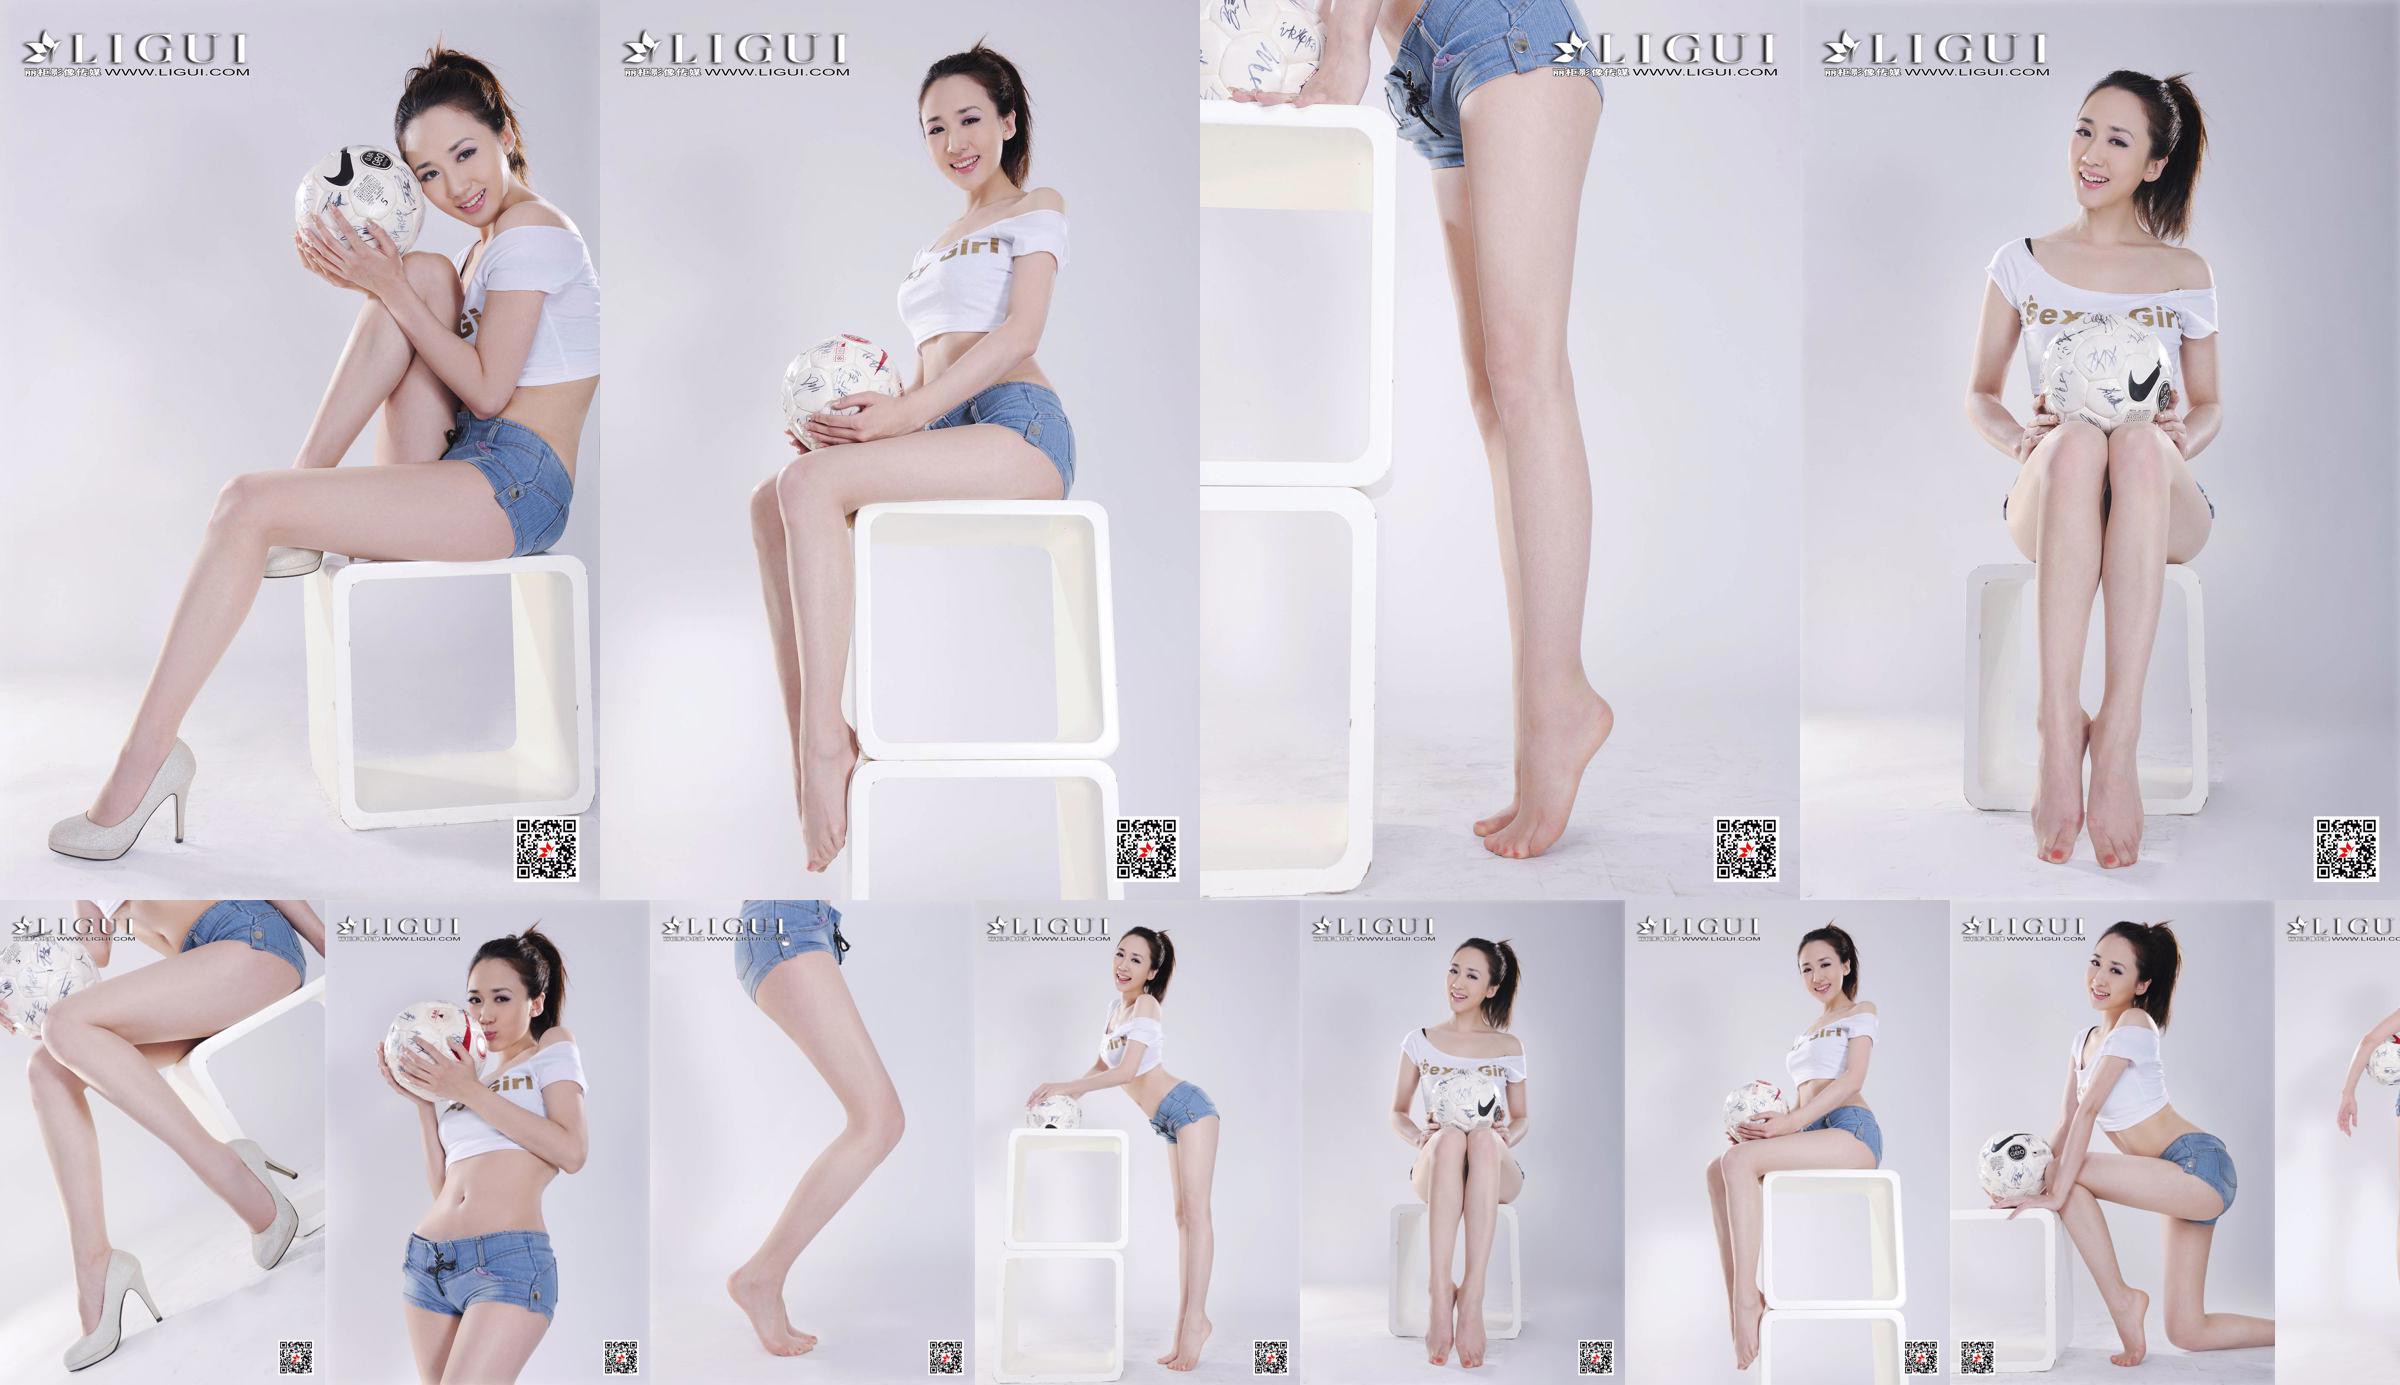 Model Qiu Chen "Super Short Hot Pants Football Girl" [LIGUI] No.638481 Pagina 1